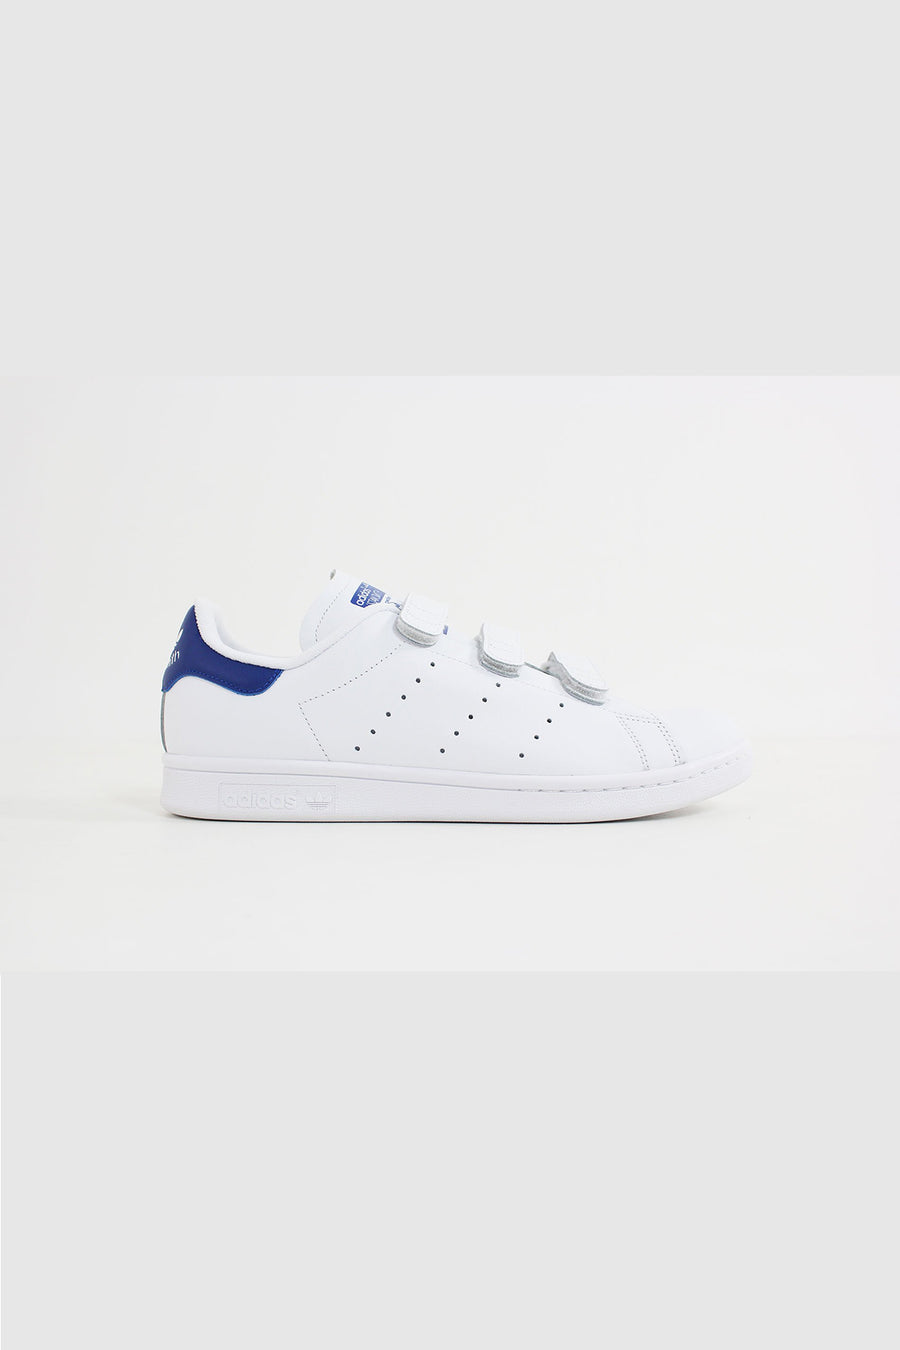 Adidas - Stan Smith CF (White/ White/ Croyal) S80042 – Sneakerworld